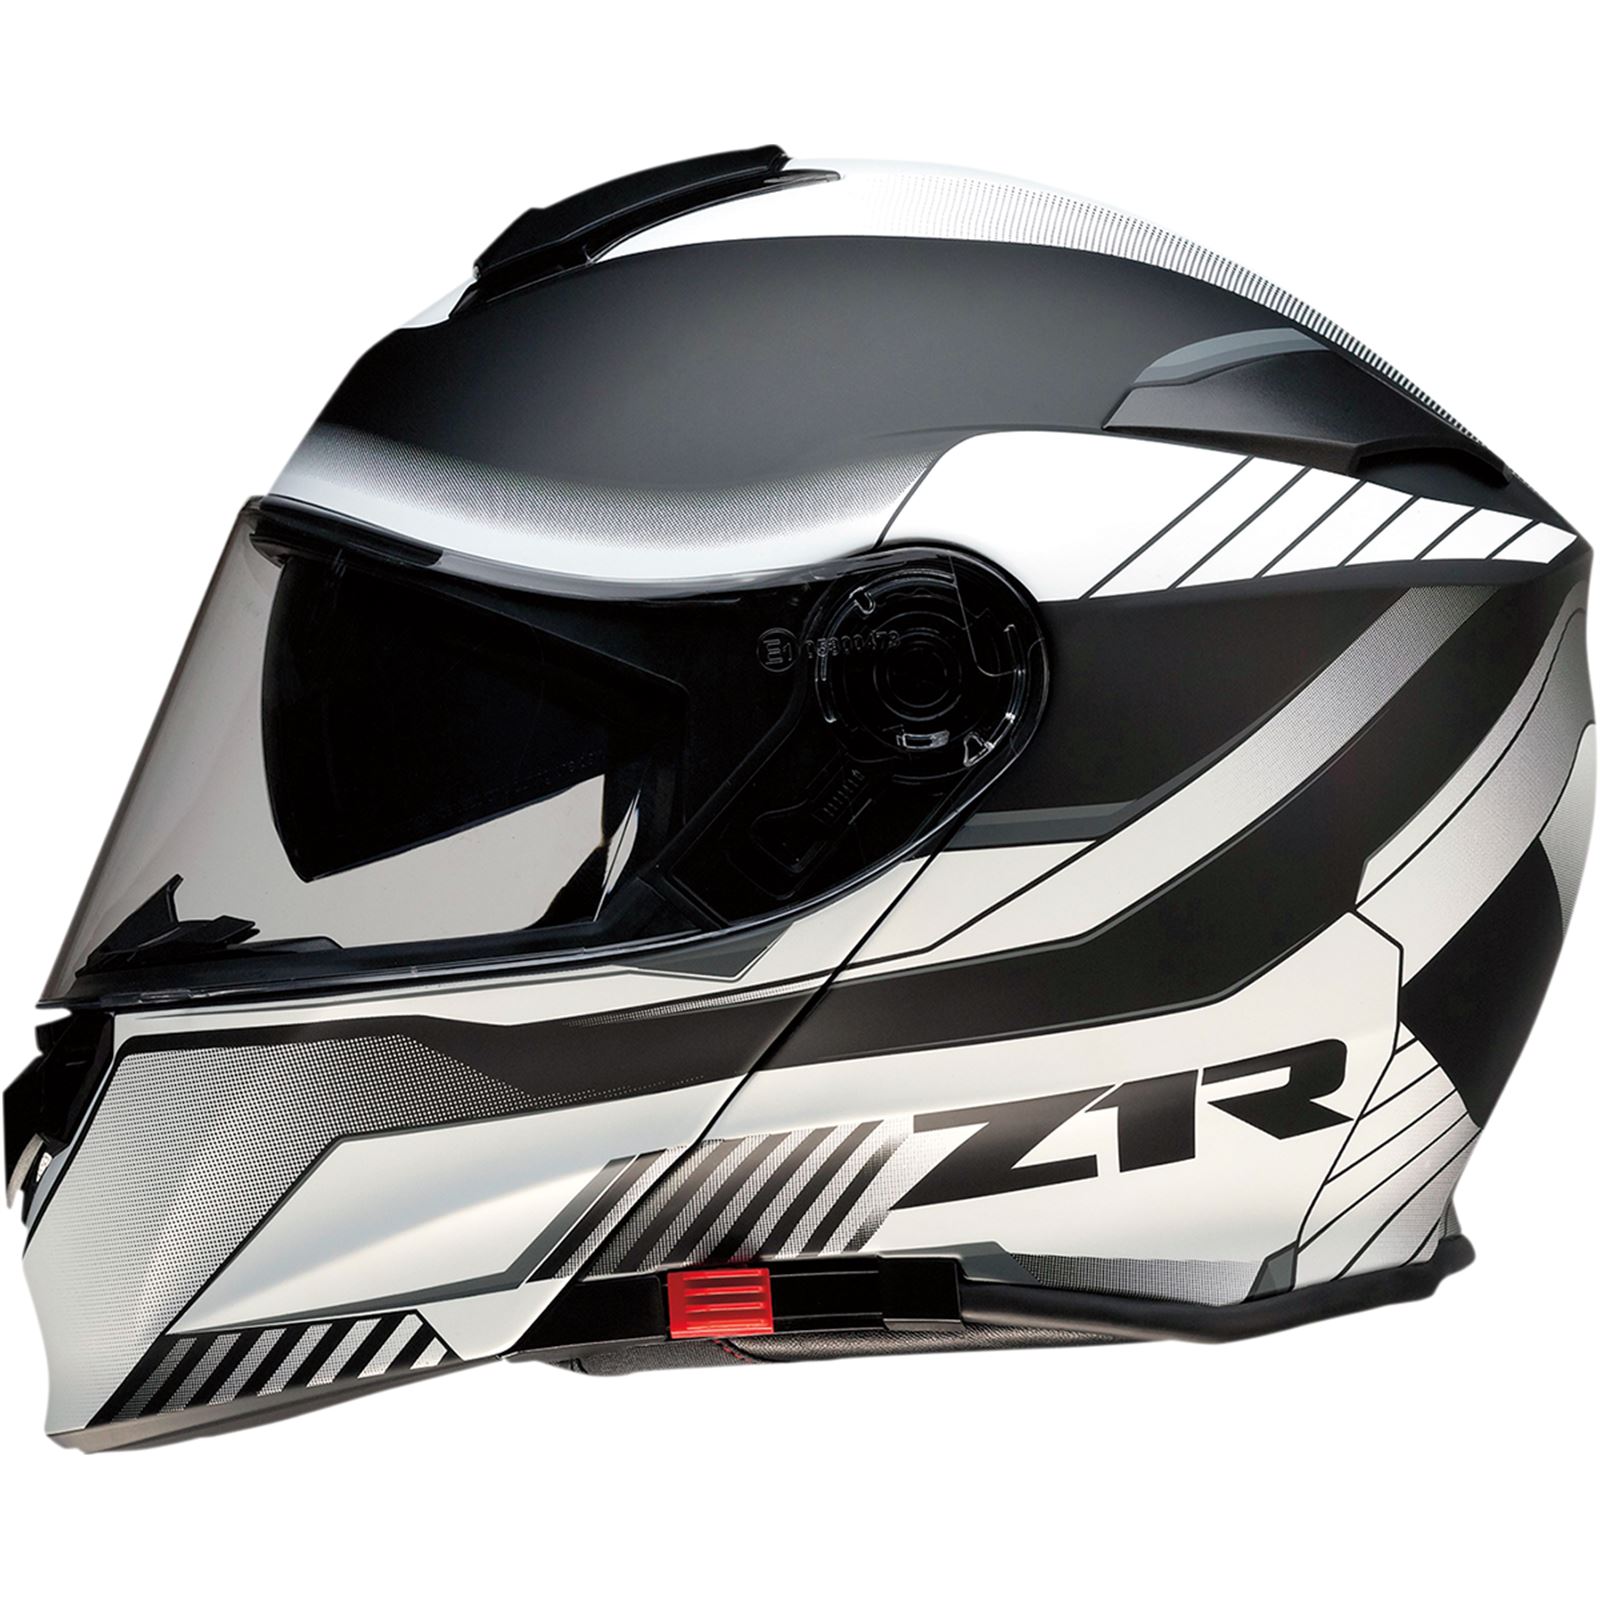 Z1R Solaris Helmet - Scythe - White/Black